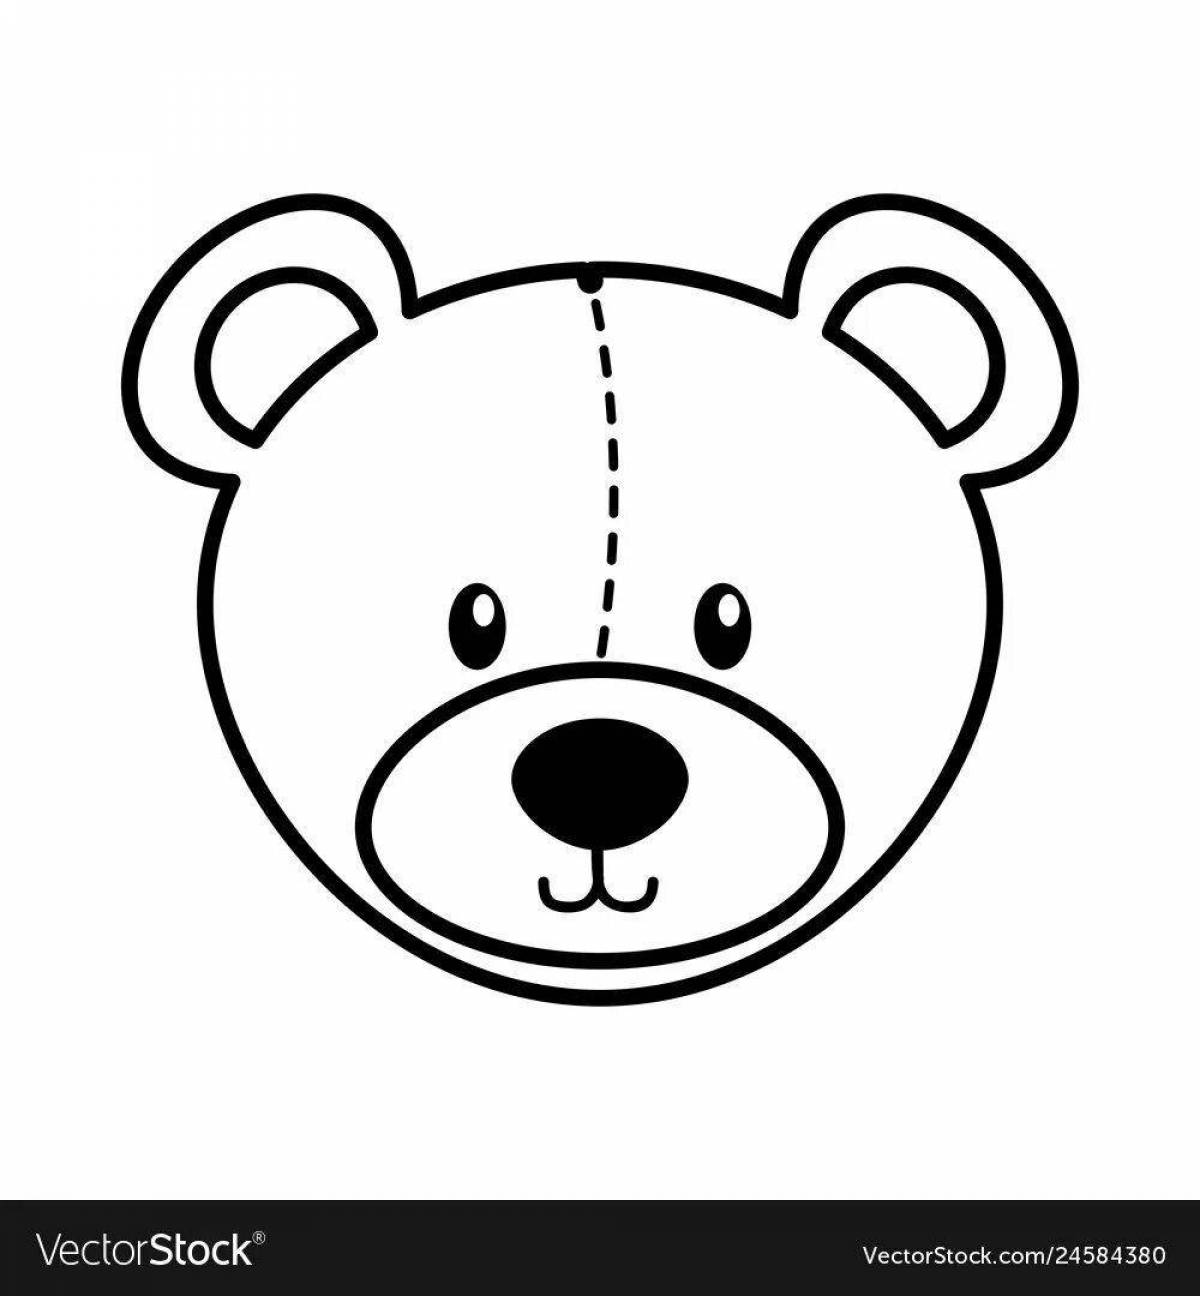 Bear head #3